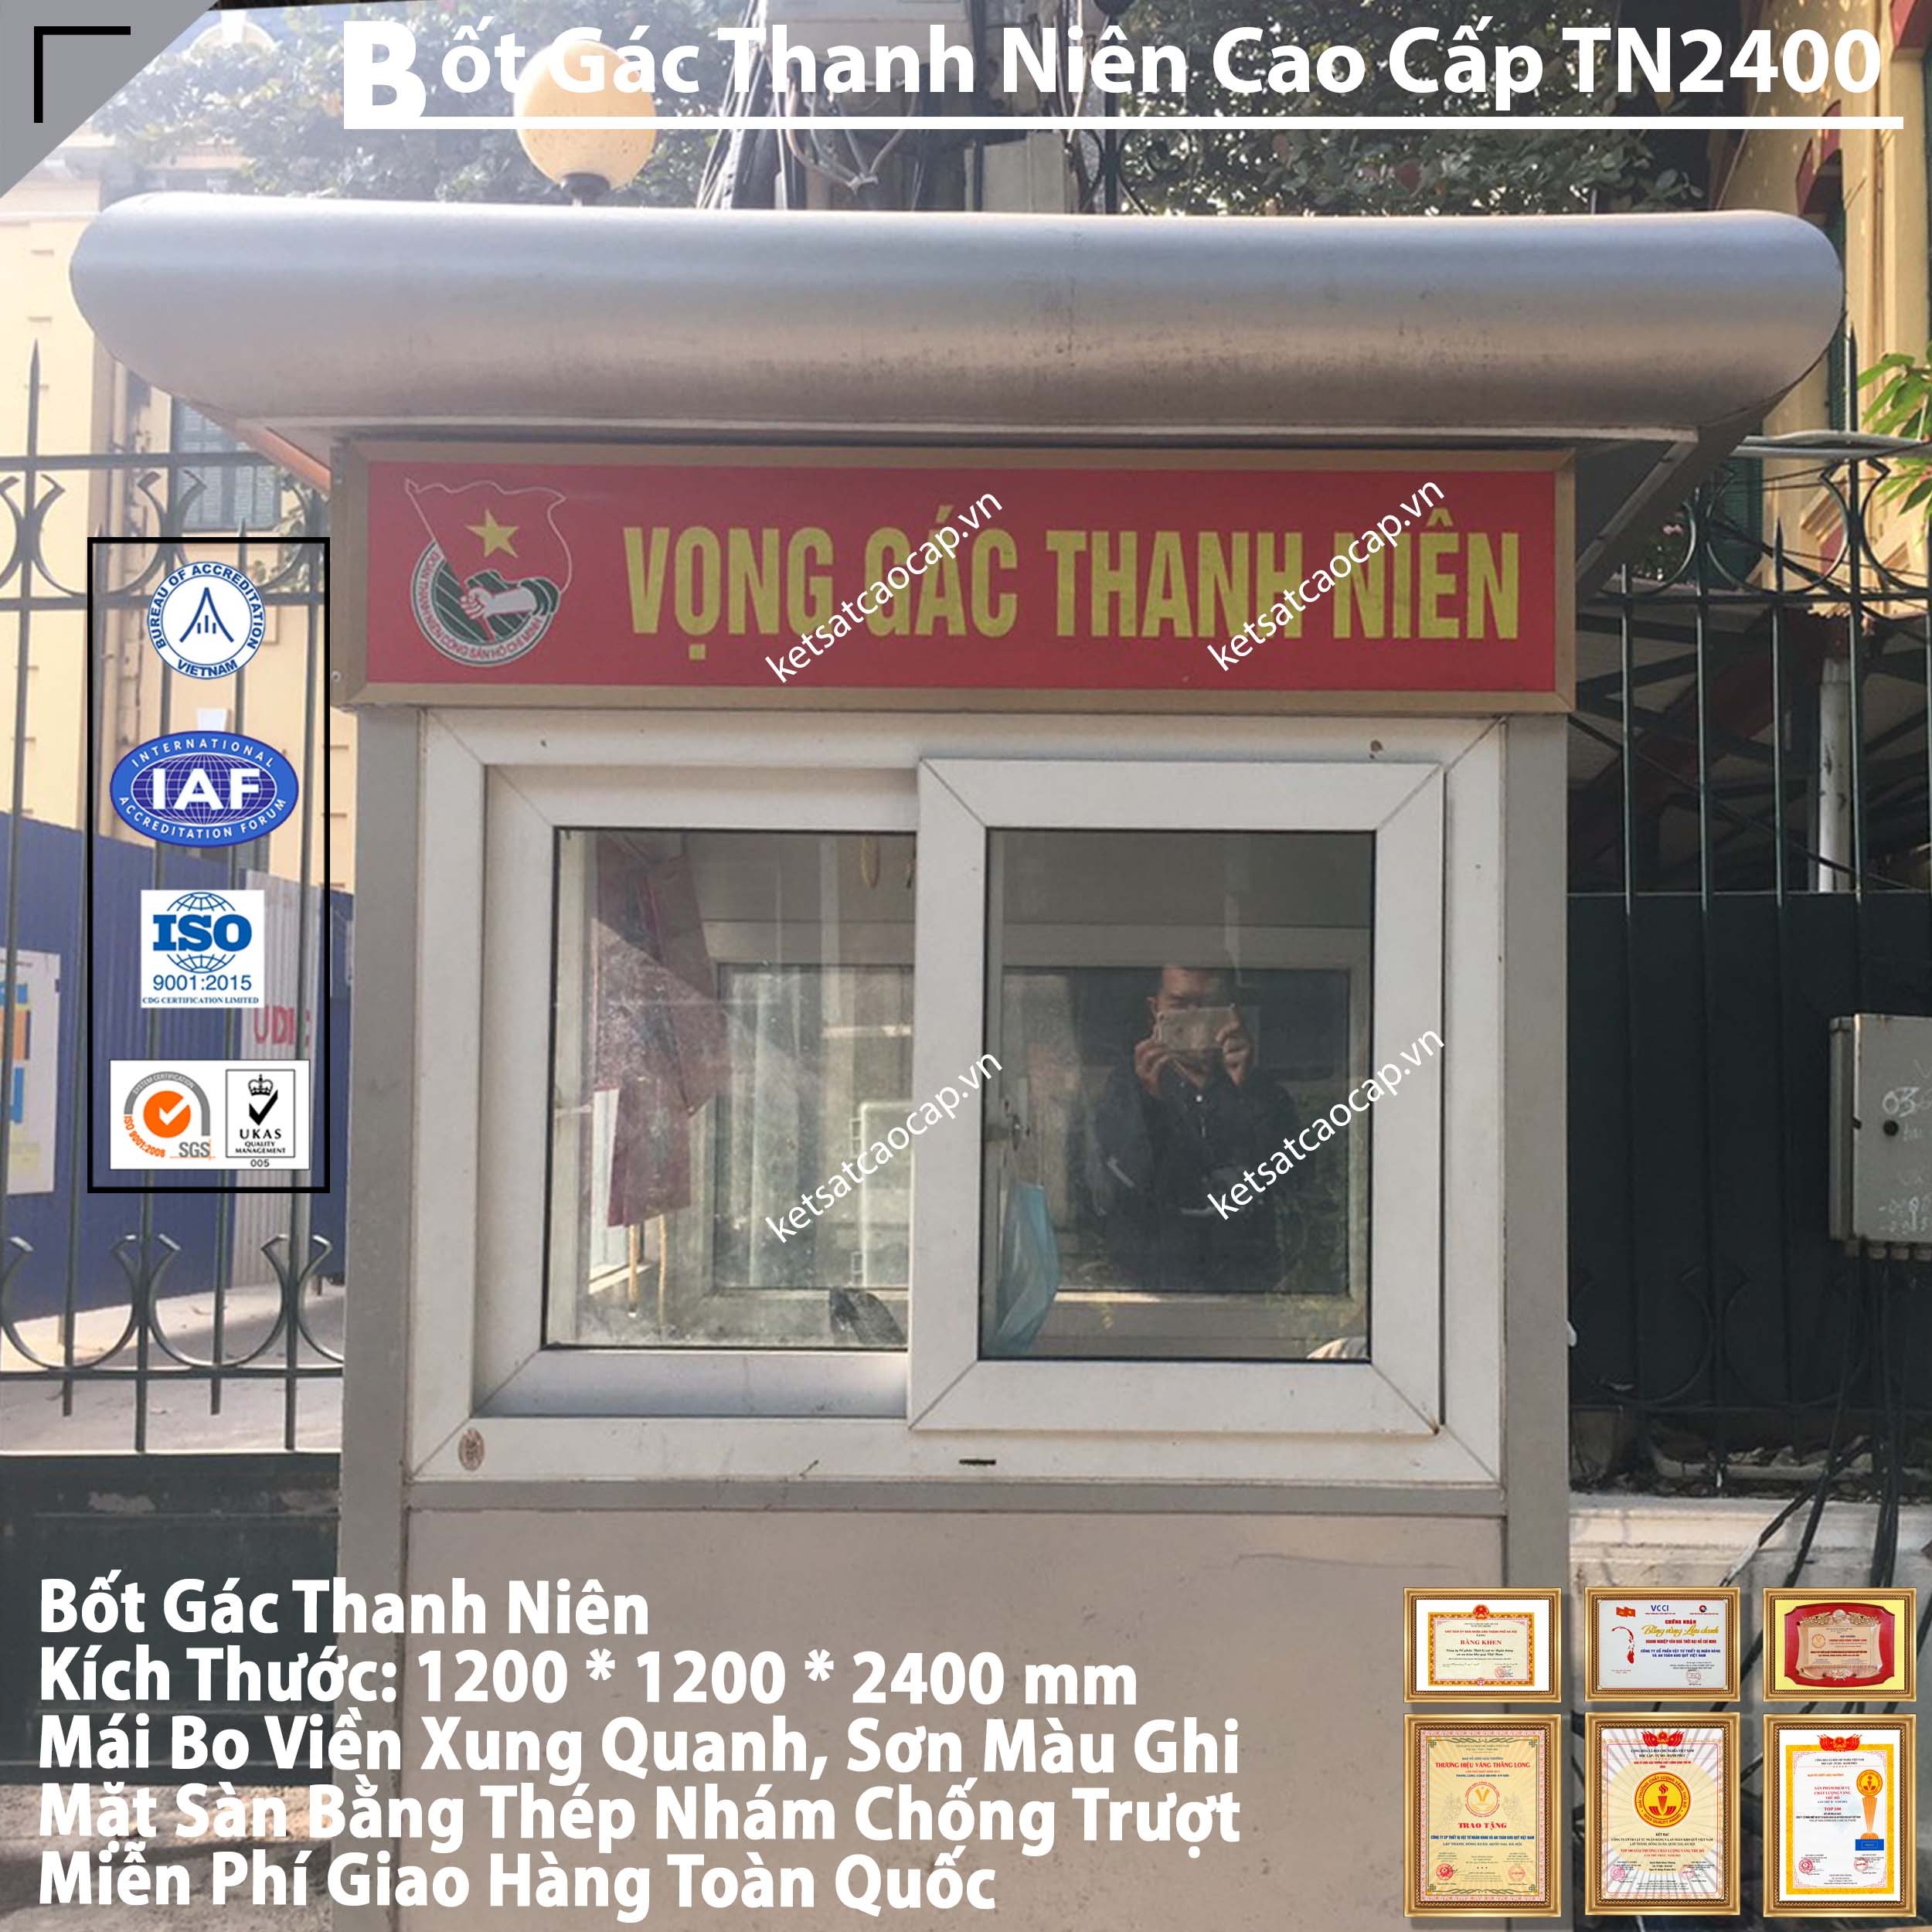 Nha May San Xuat Vong Gac Thanh Nien Hang Dau Viet Nam